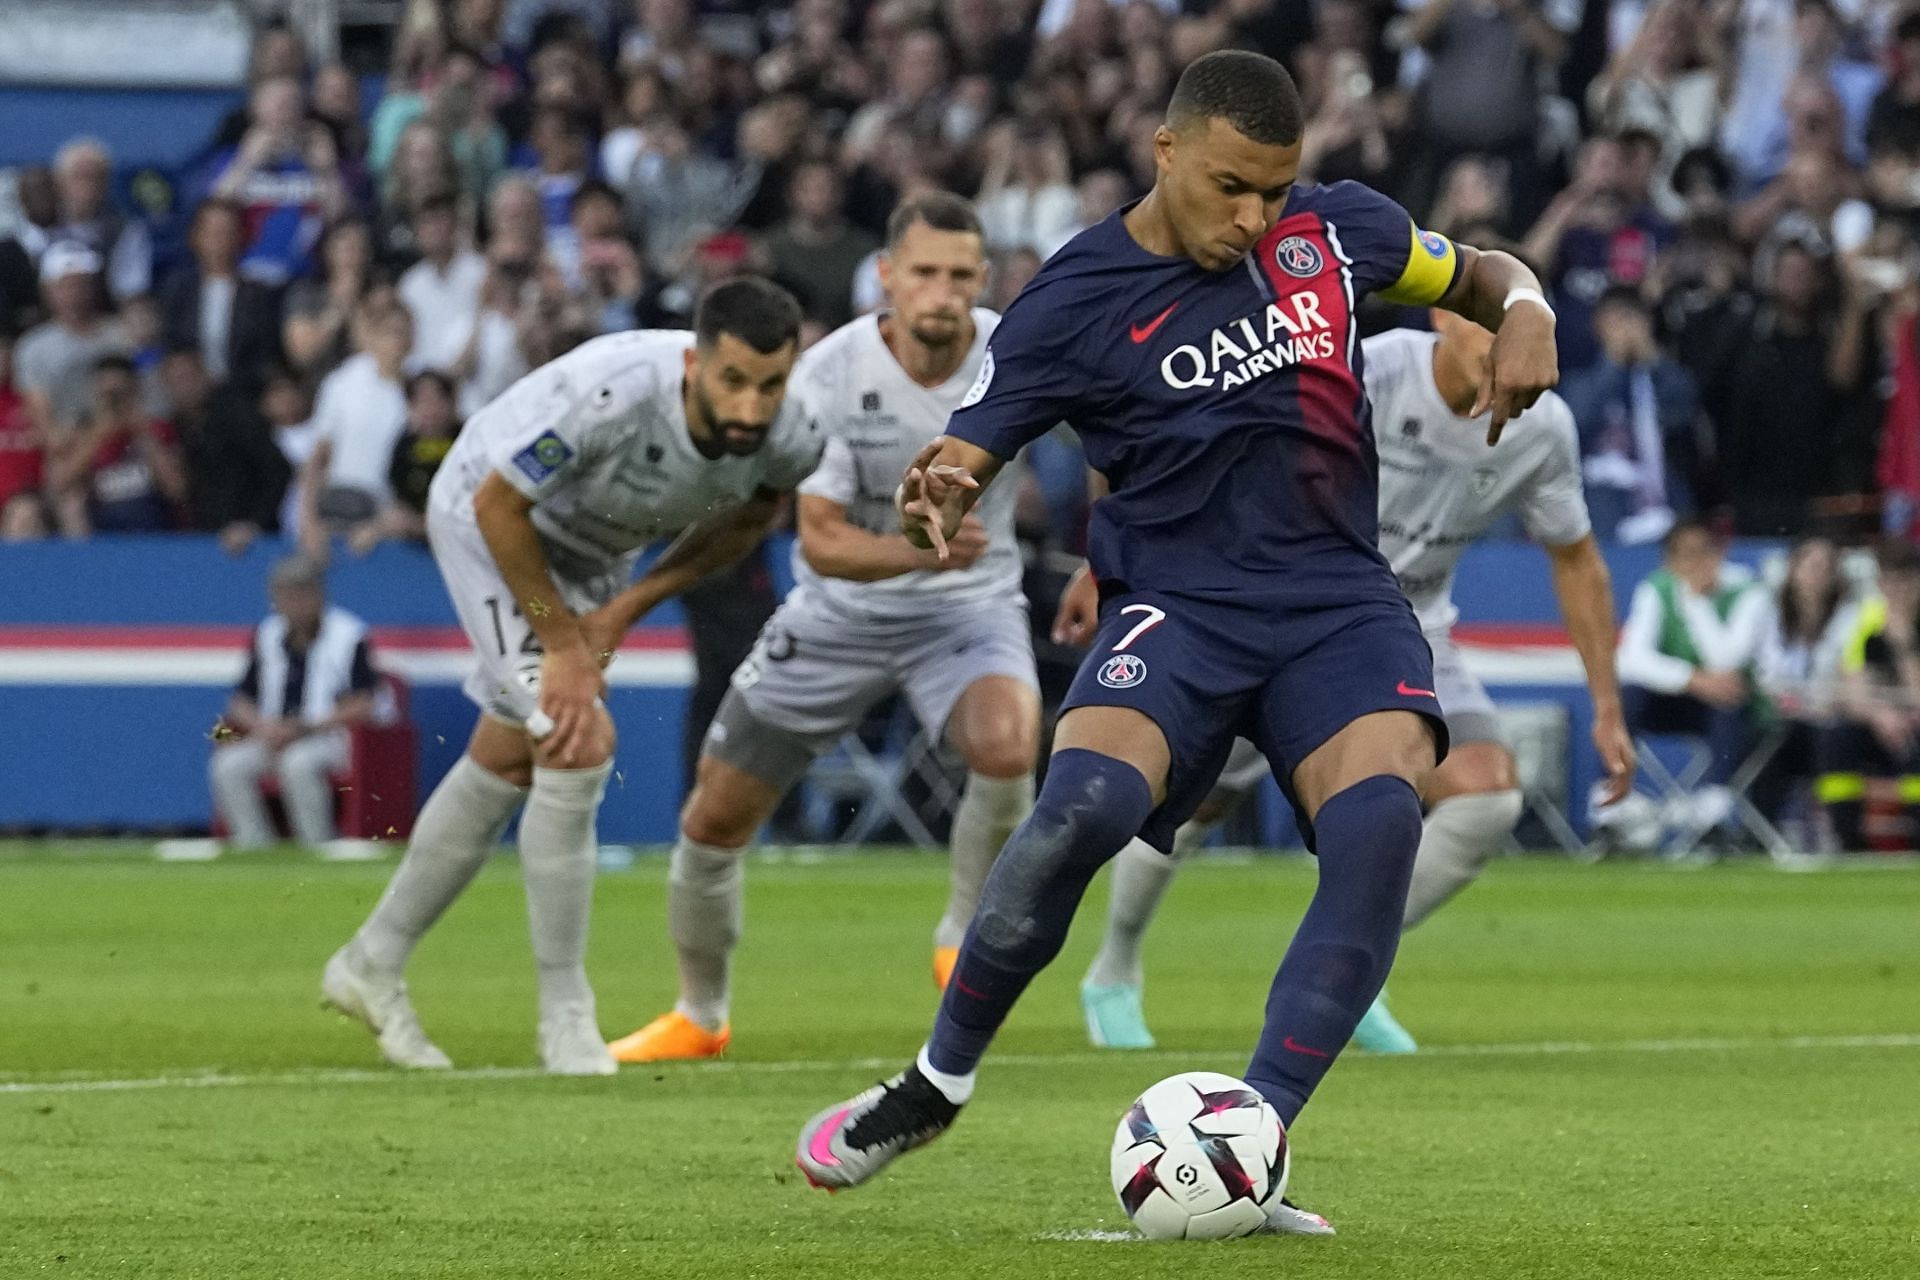 Kylian Mbappe scores a penalty kick for Paris Saint-Germain against Clermont Foot